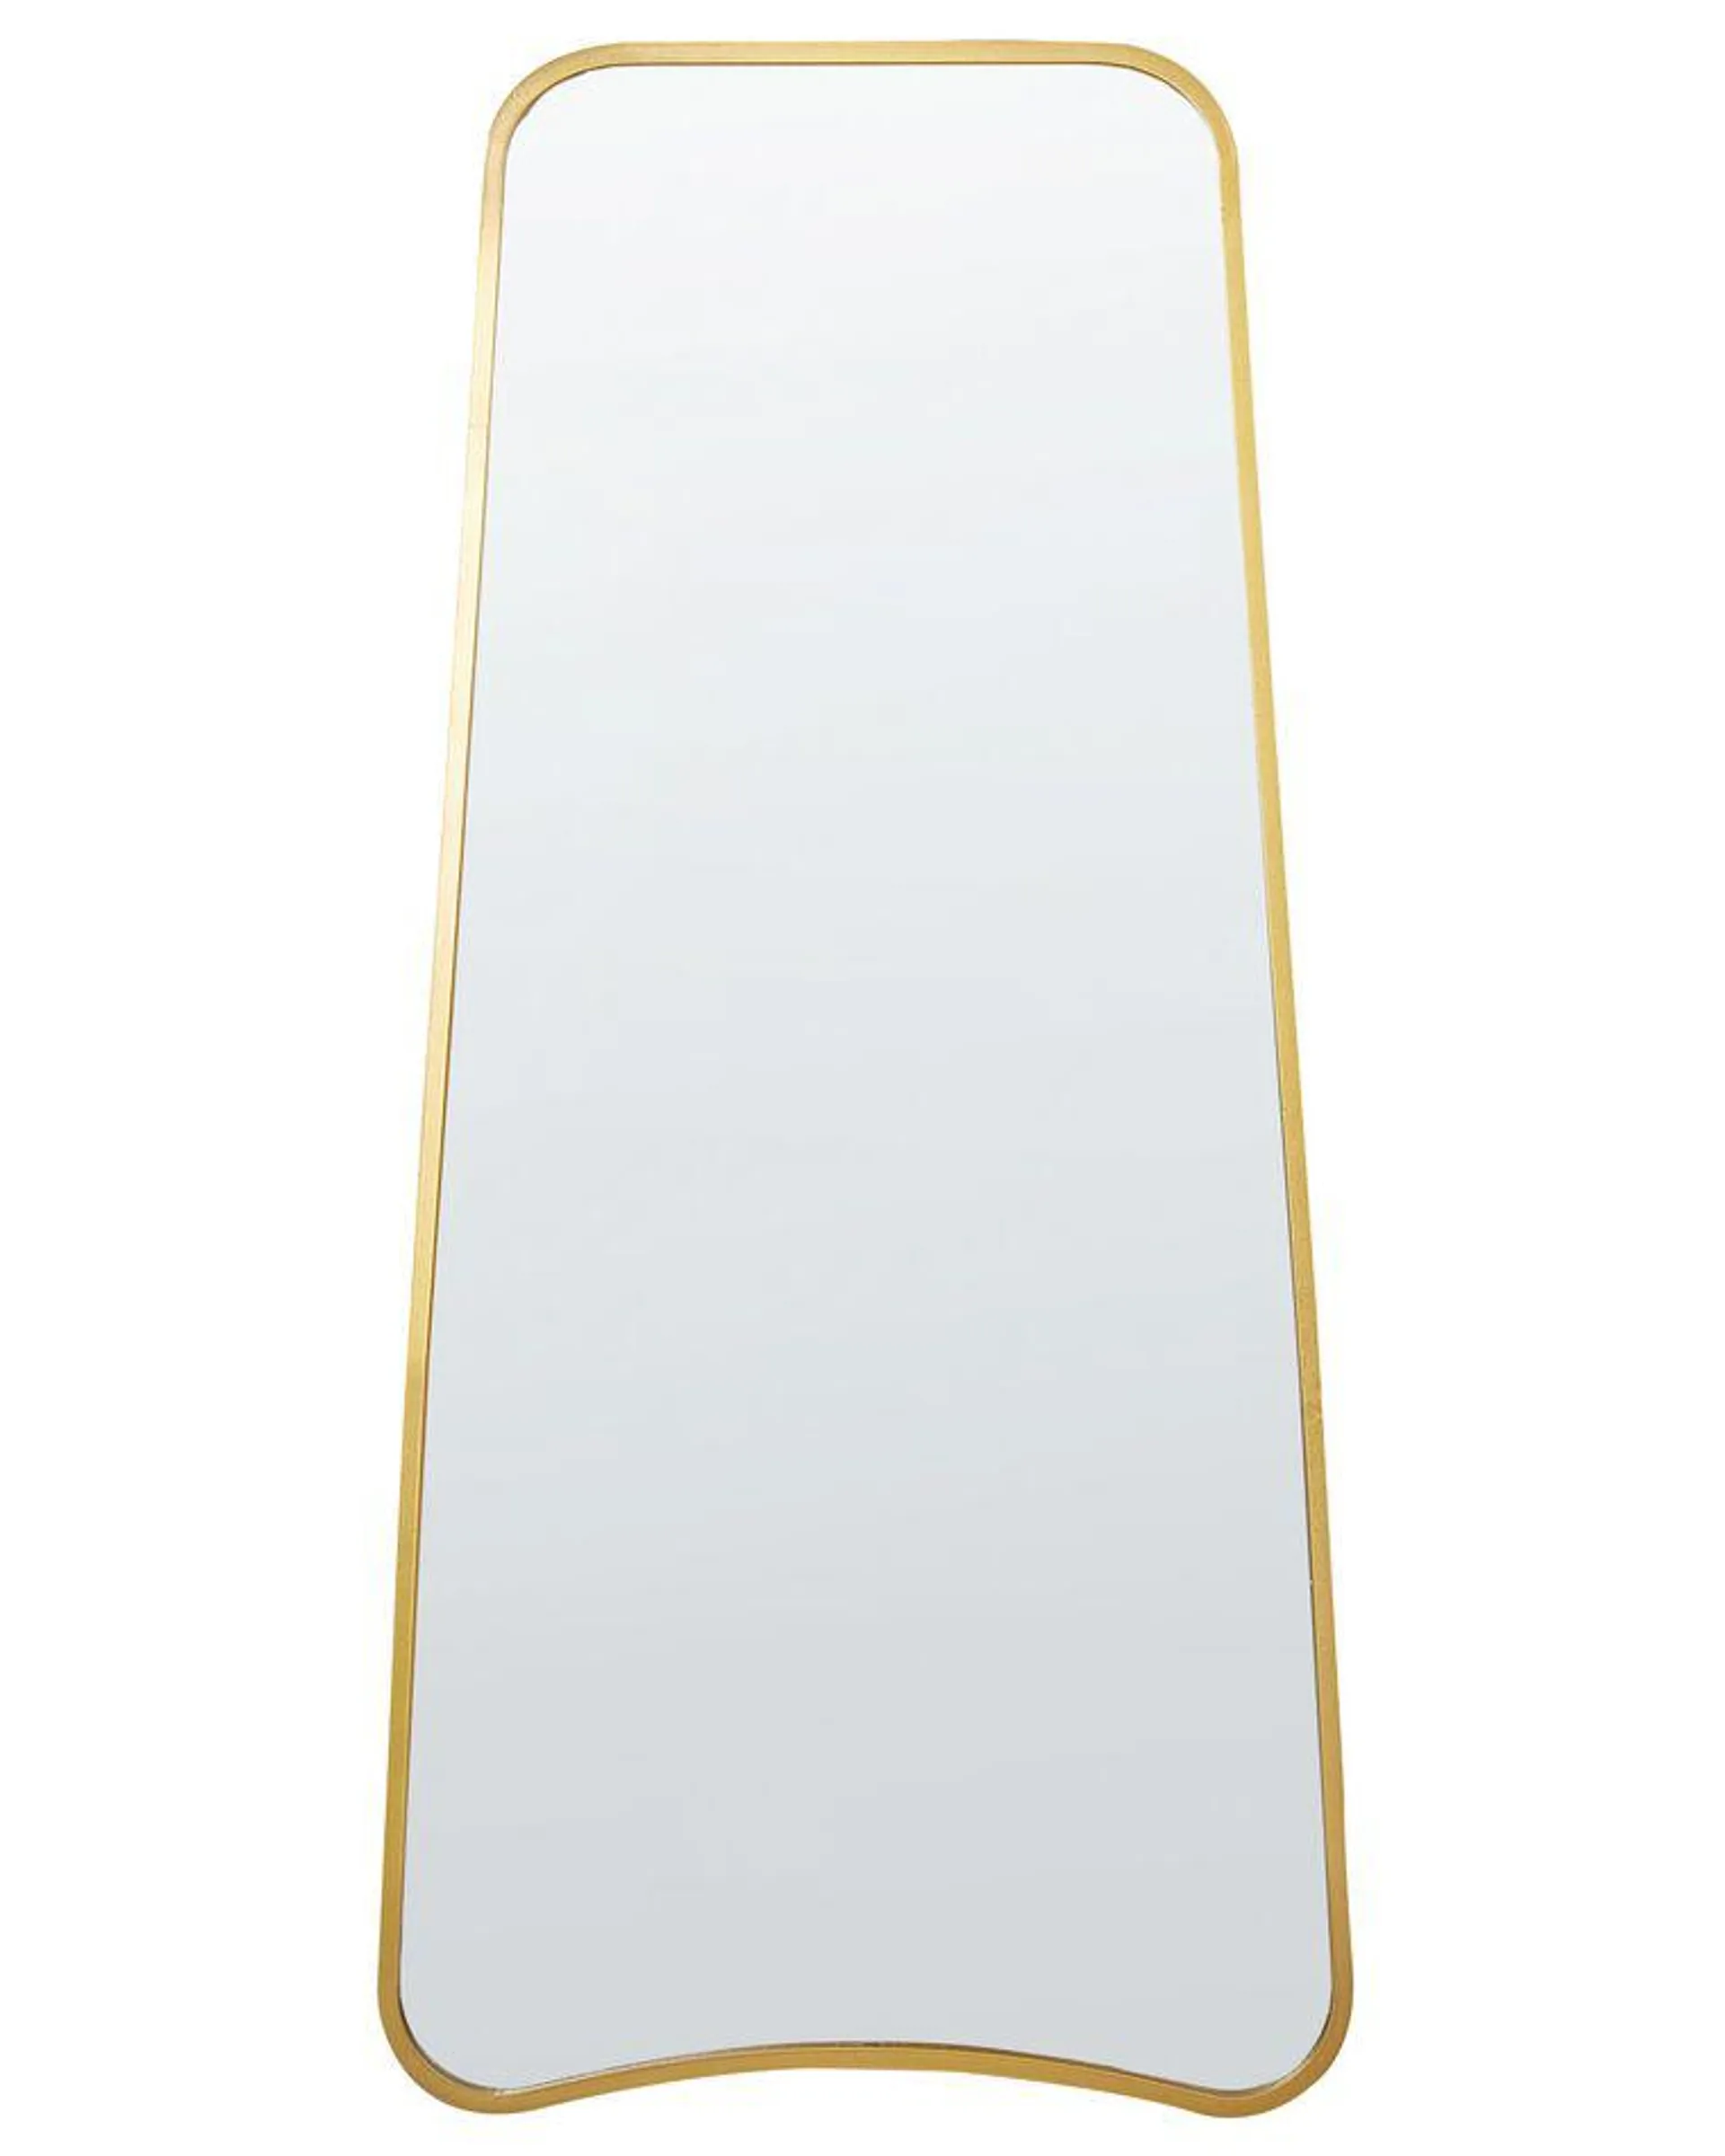 Espejo de pared de metal dorado 58 x 122 cm LEVET